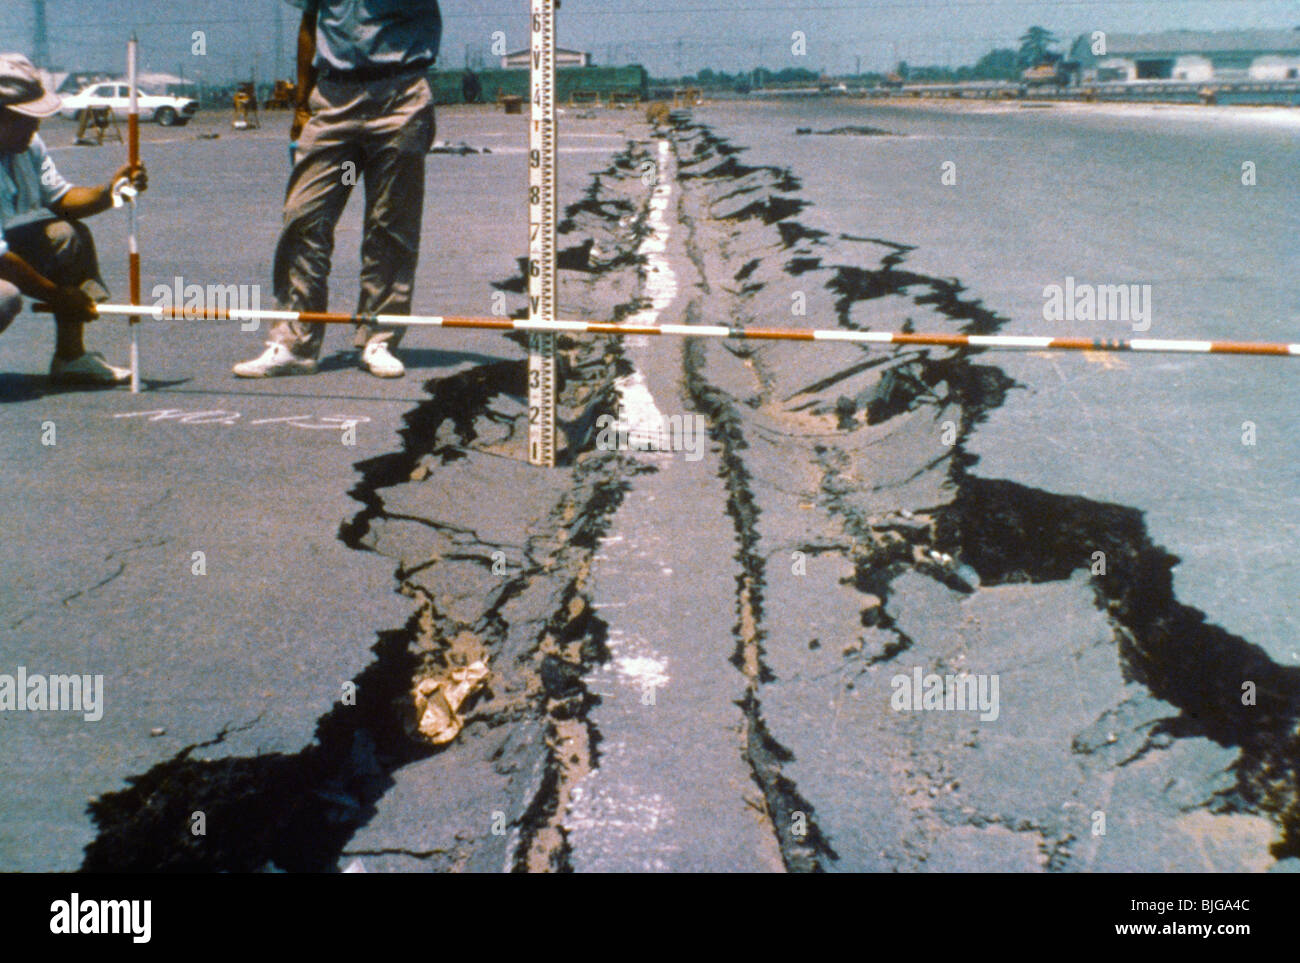 Los daños causados por el terremoto de Japón carretera agrietada Foto de stock